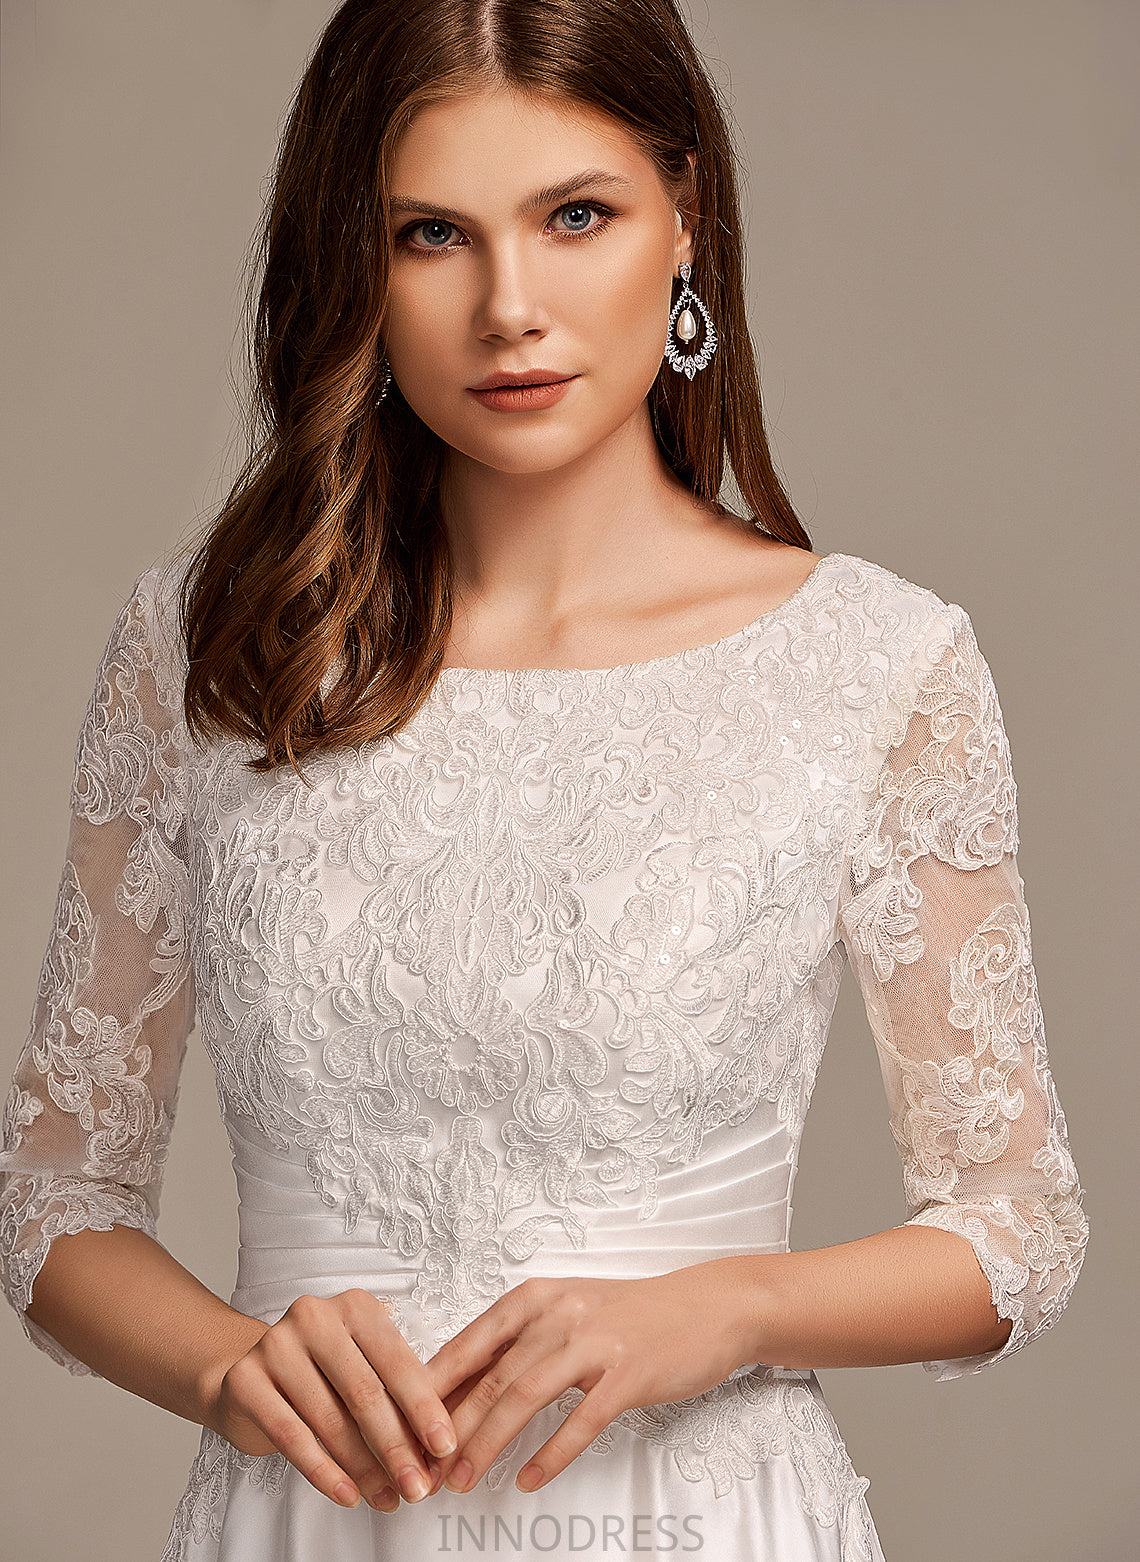 Pockets Neck With Wedding Dress Tea-Length Scoop Wedding Dresses Livia A-Line